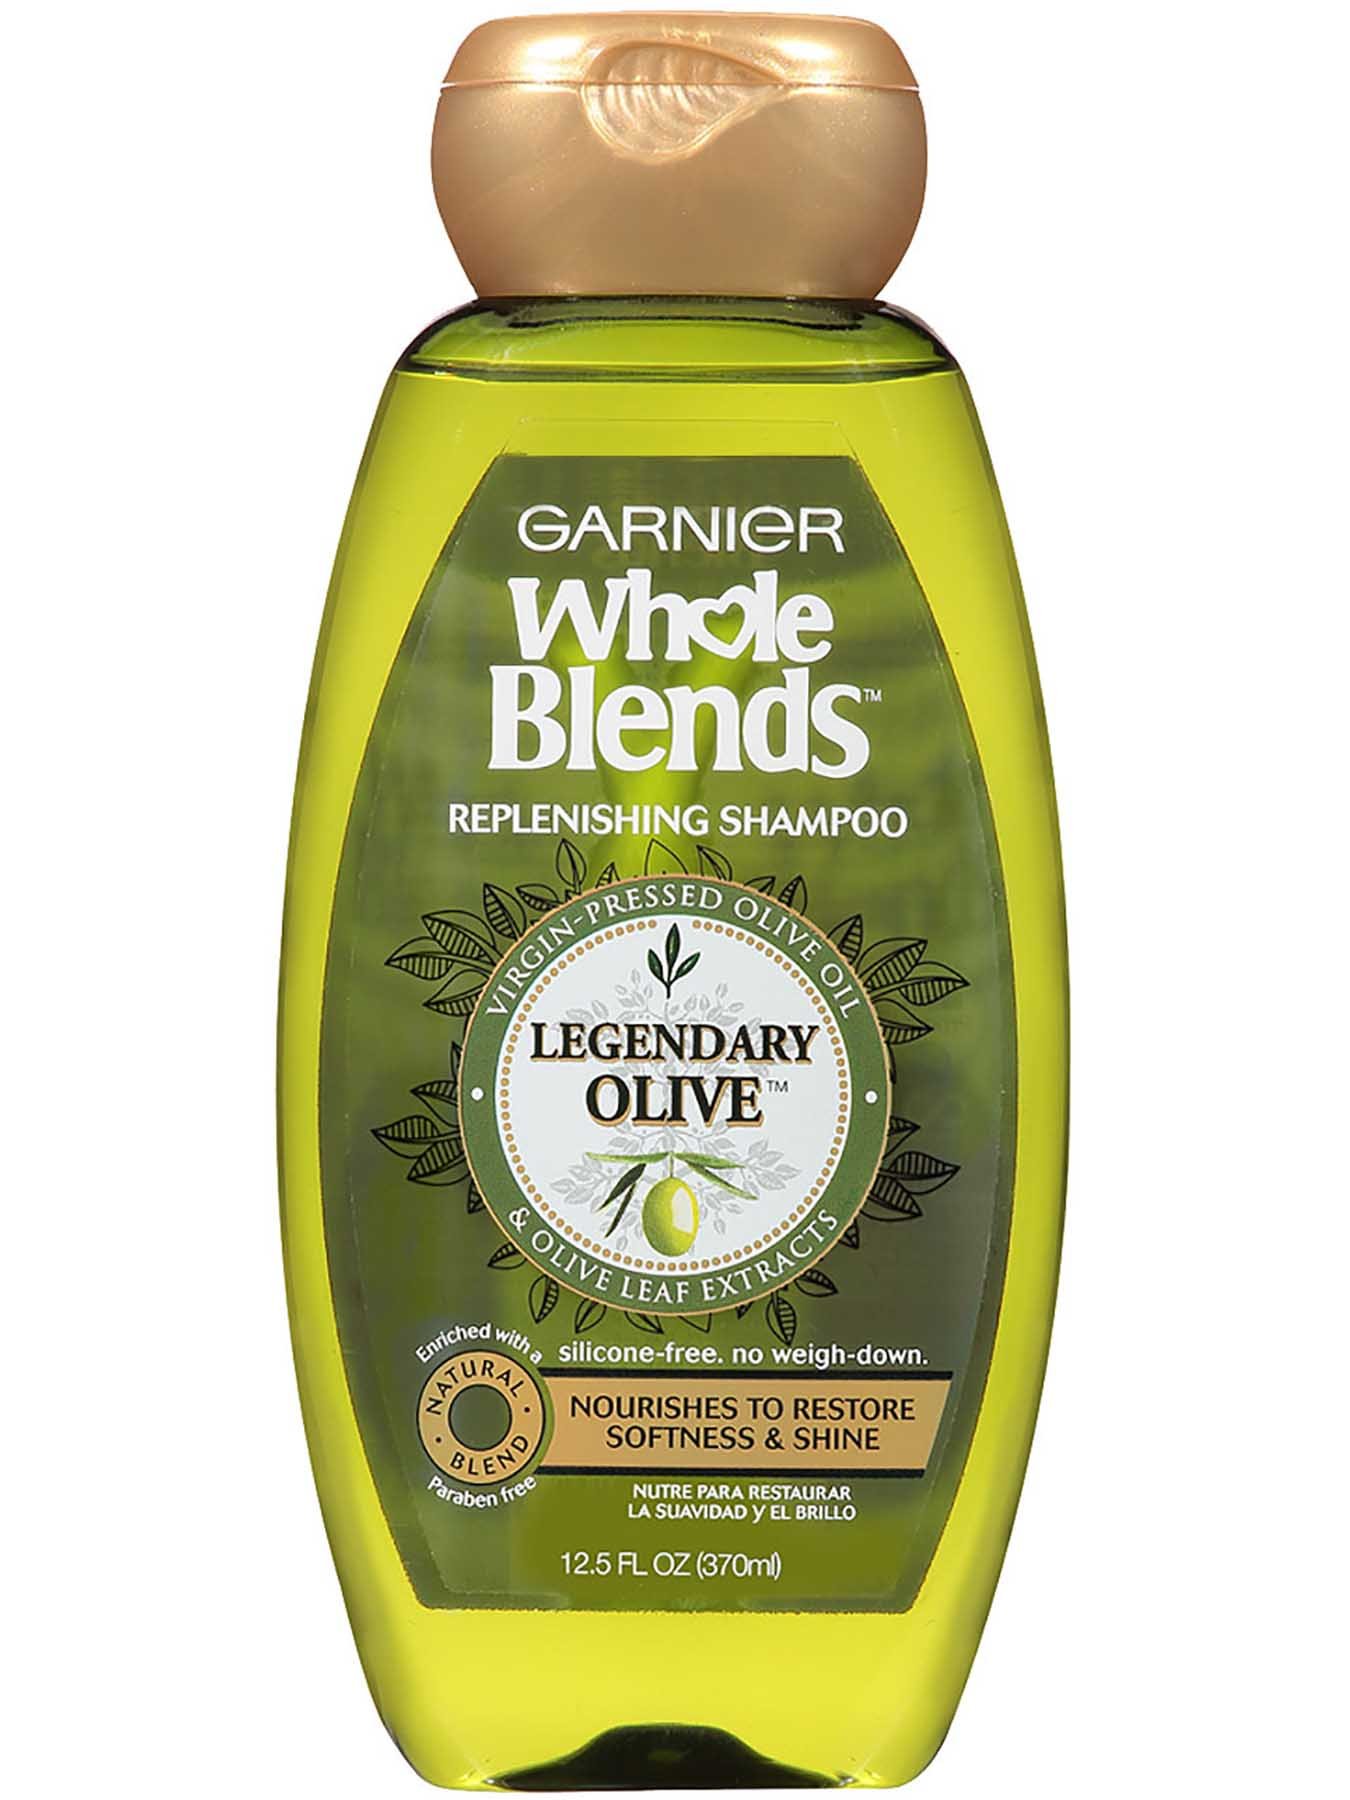 Blends Legendary Olive Replenishing Shampoo - Garnier